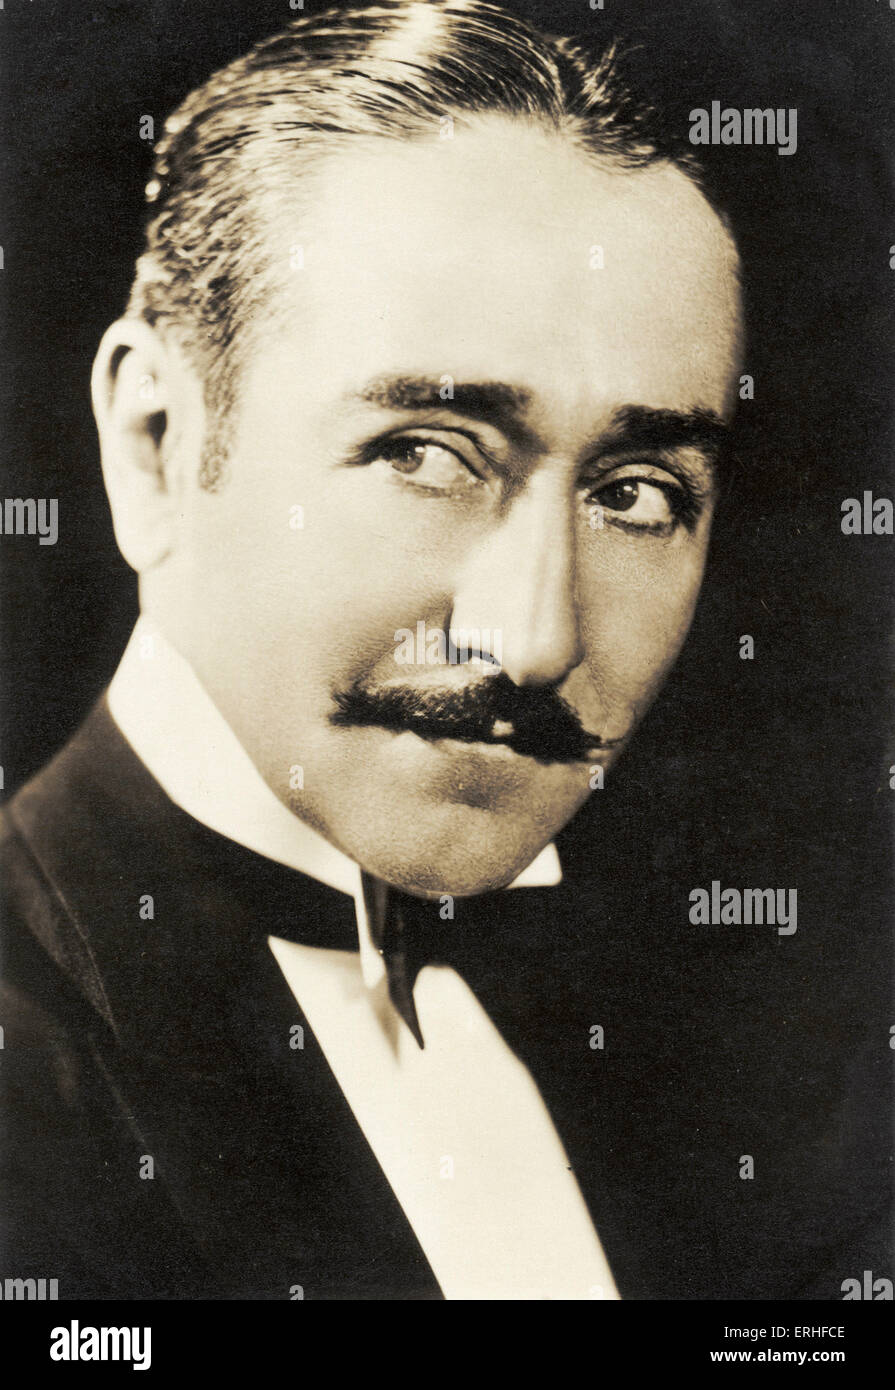 Adolphe Menjou - star du cinéma muet et sonore, 18 février 1890 - 29 octobre 1963 Banque D'Images